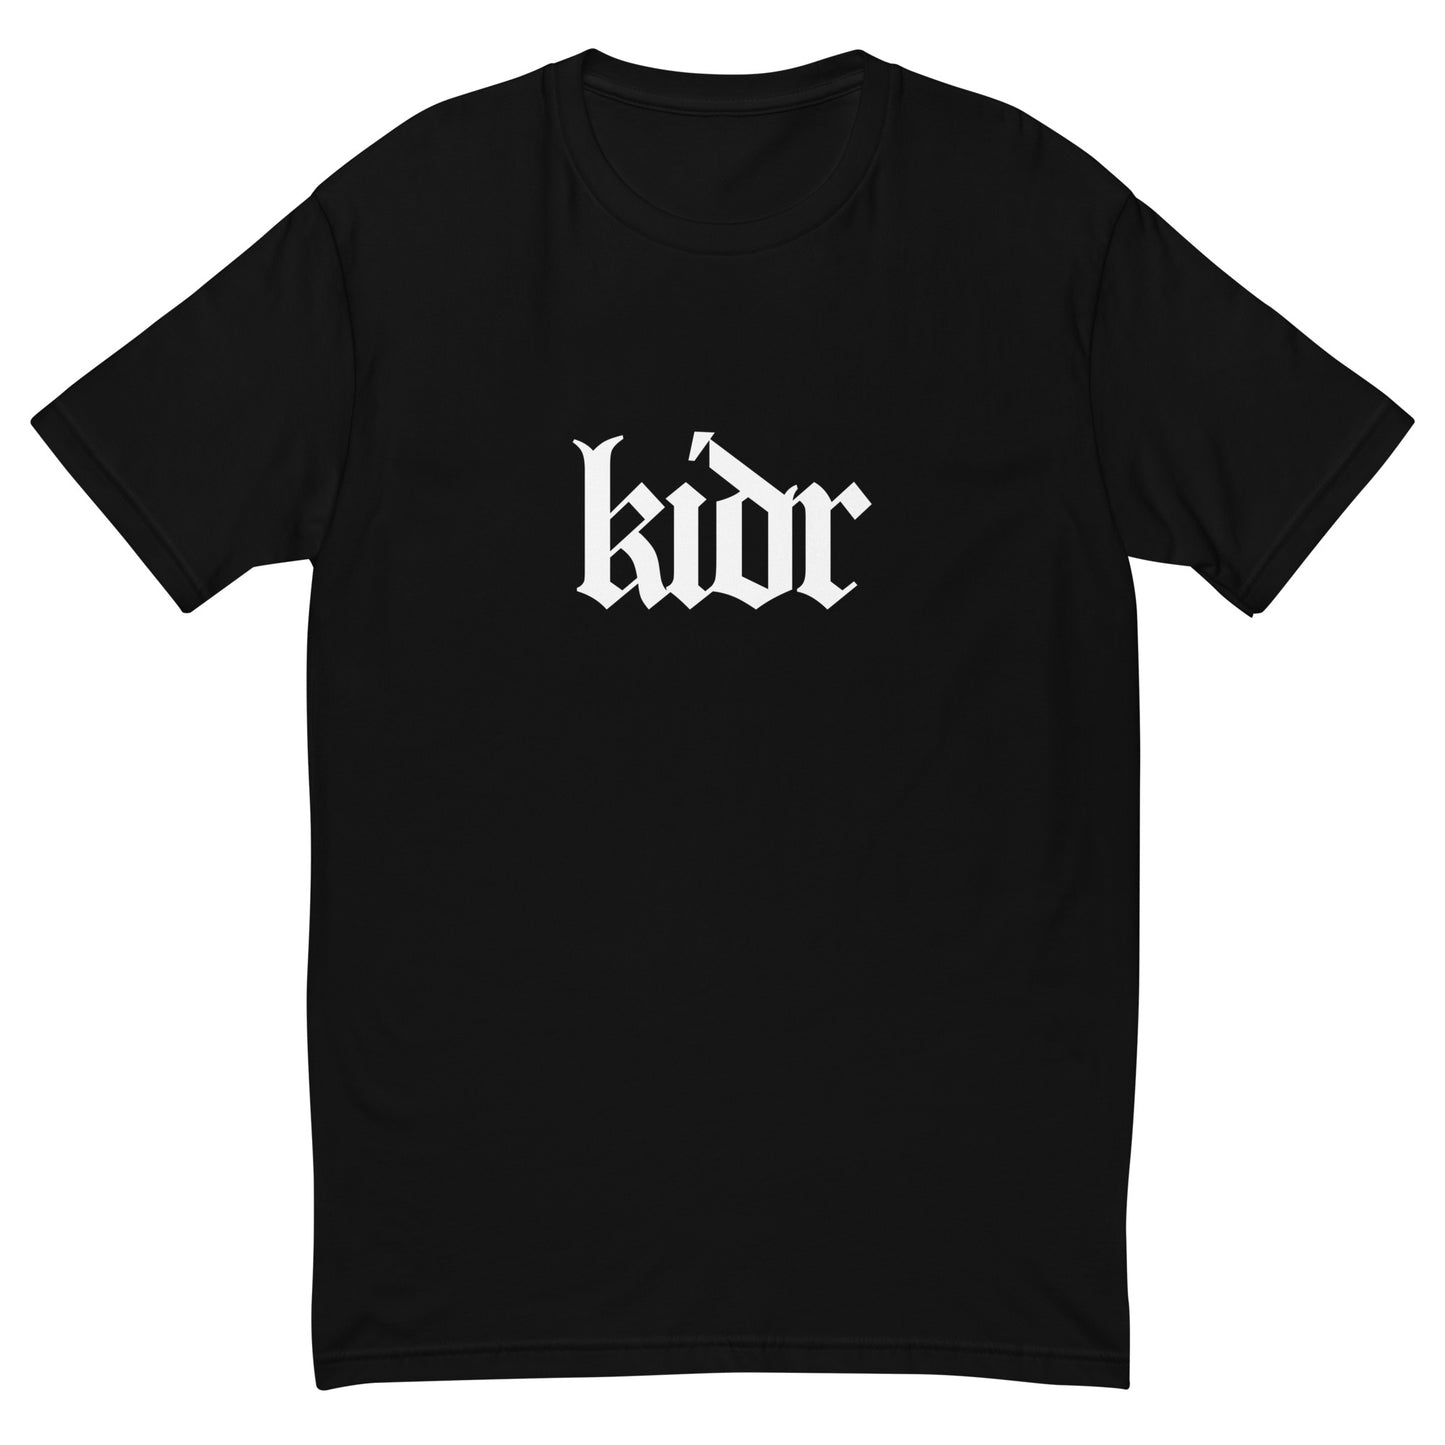 KIDR Short Sleeve T-shirt (Black)